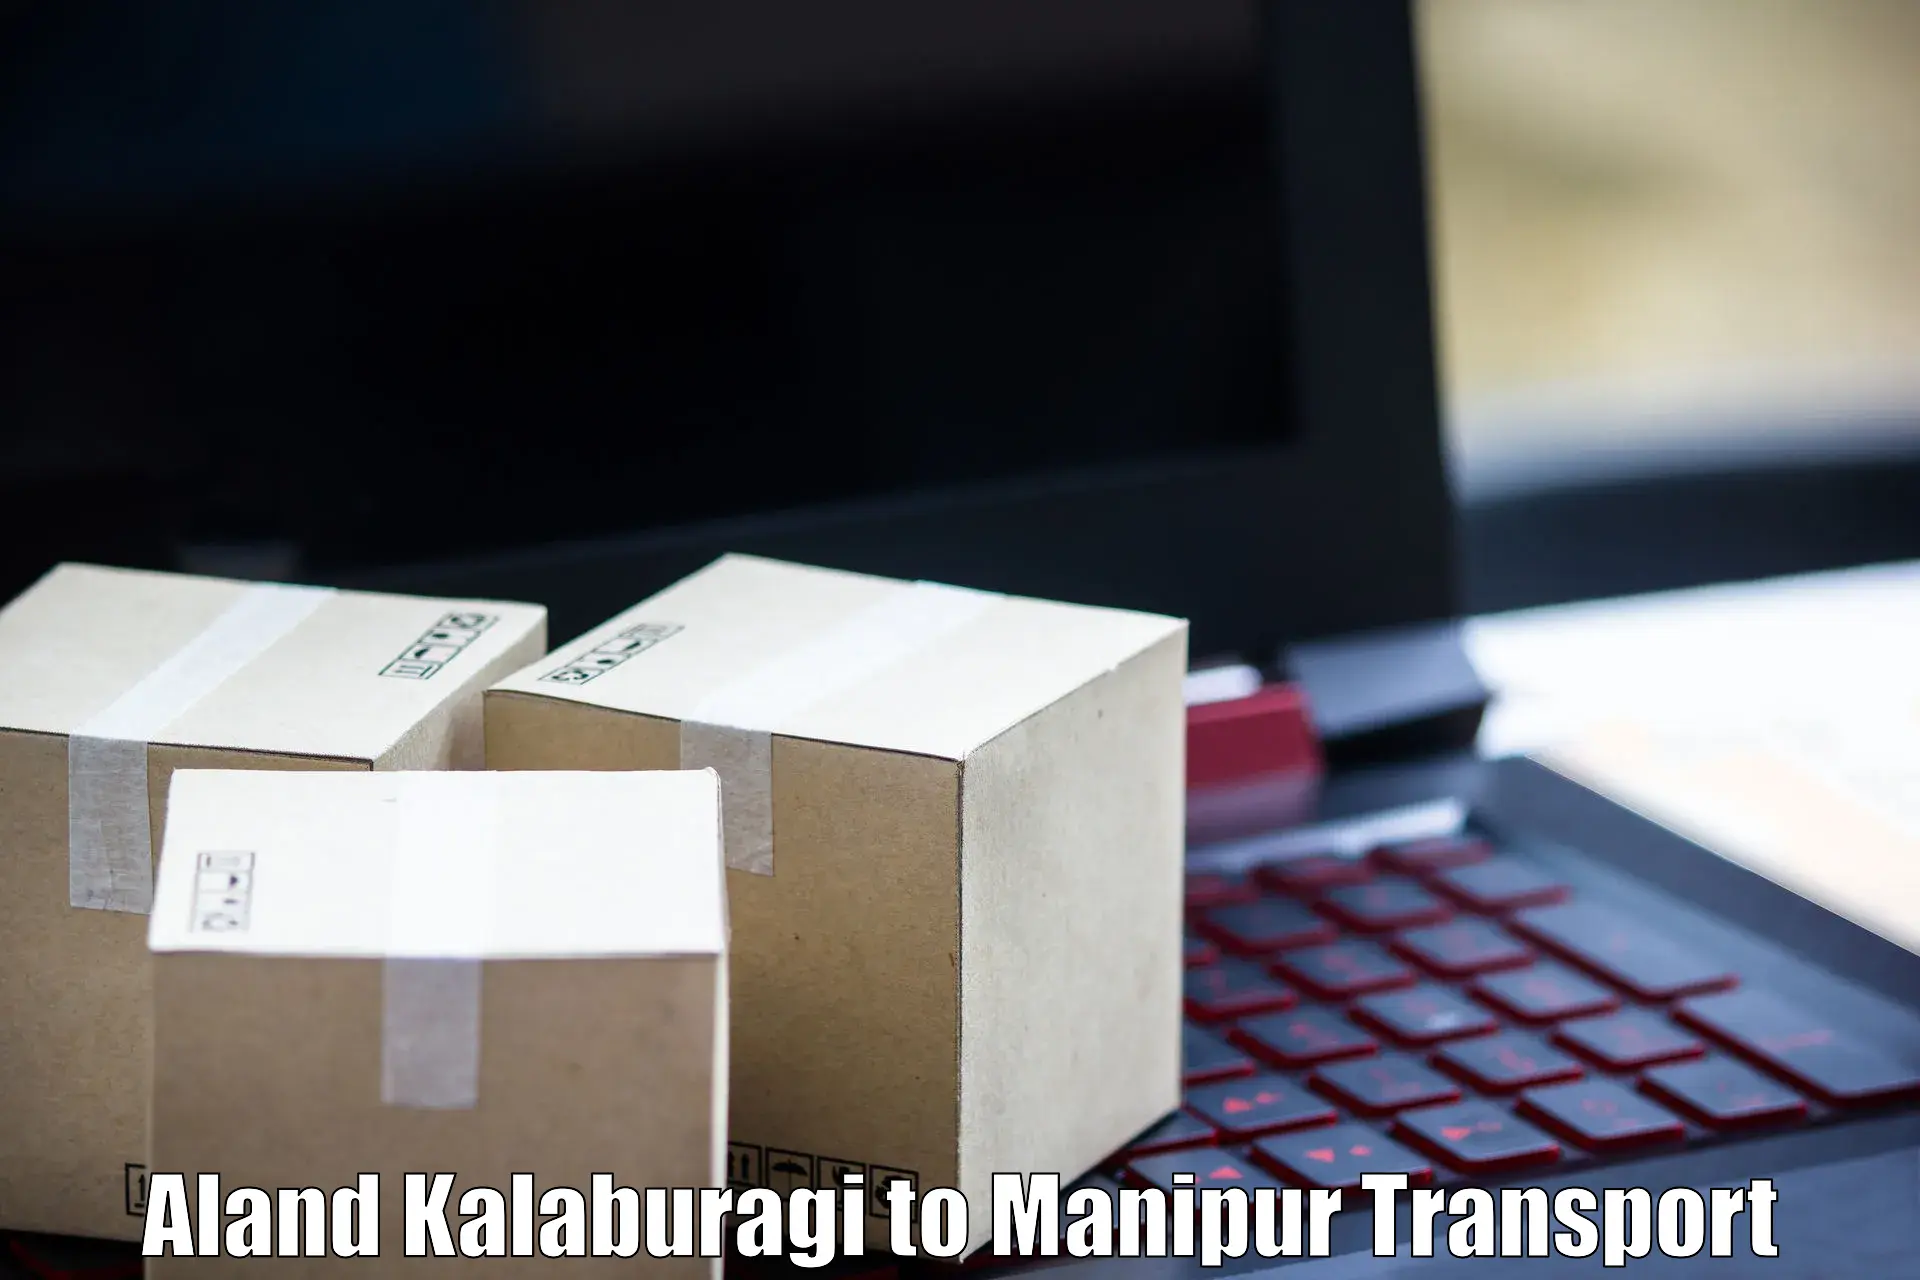 International cargo transportation services Aland Kalaburagi to Kaptipada